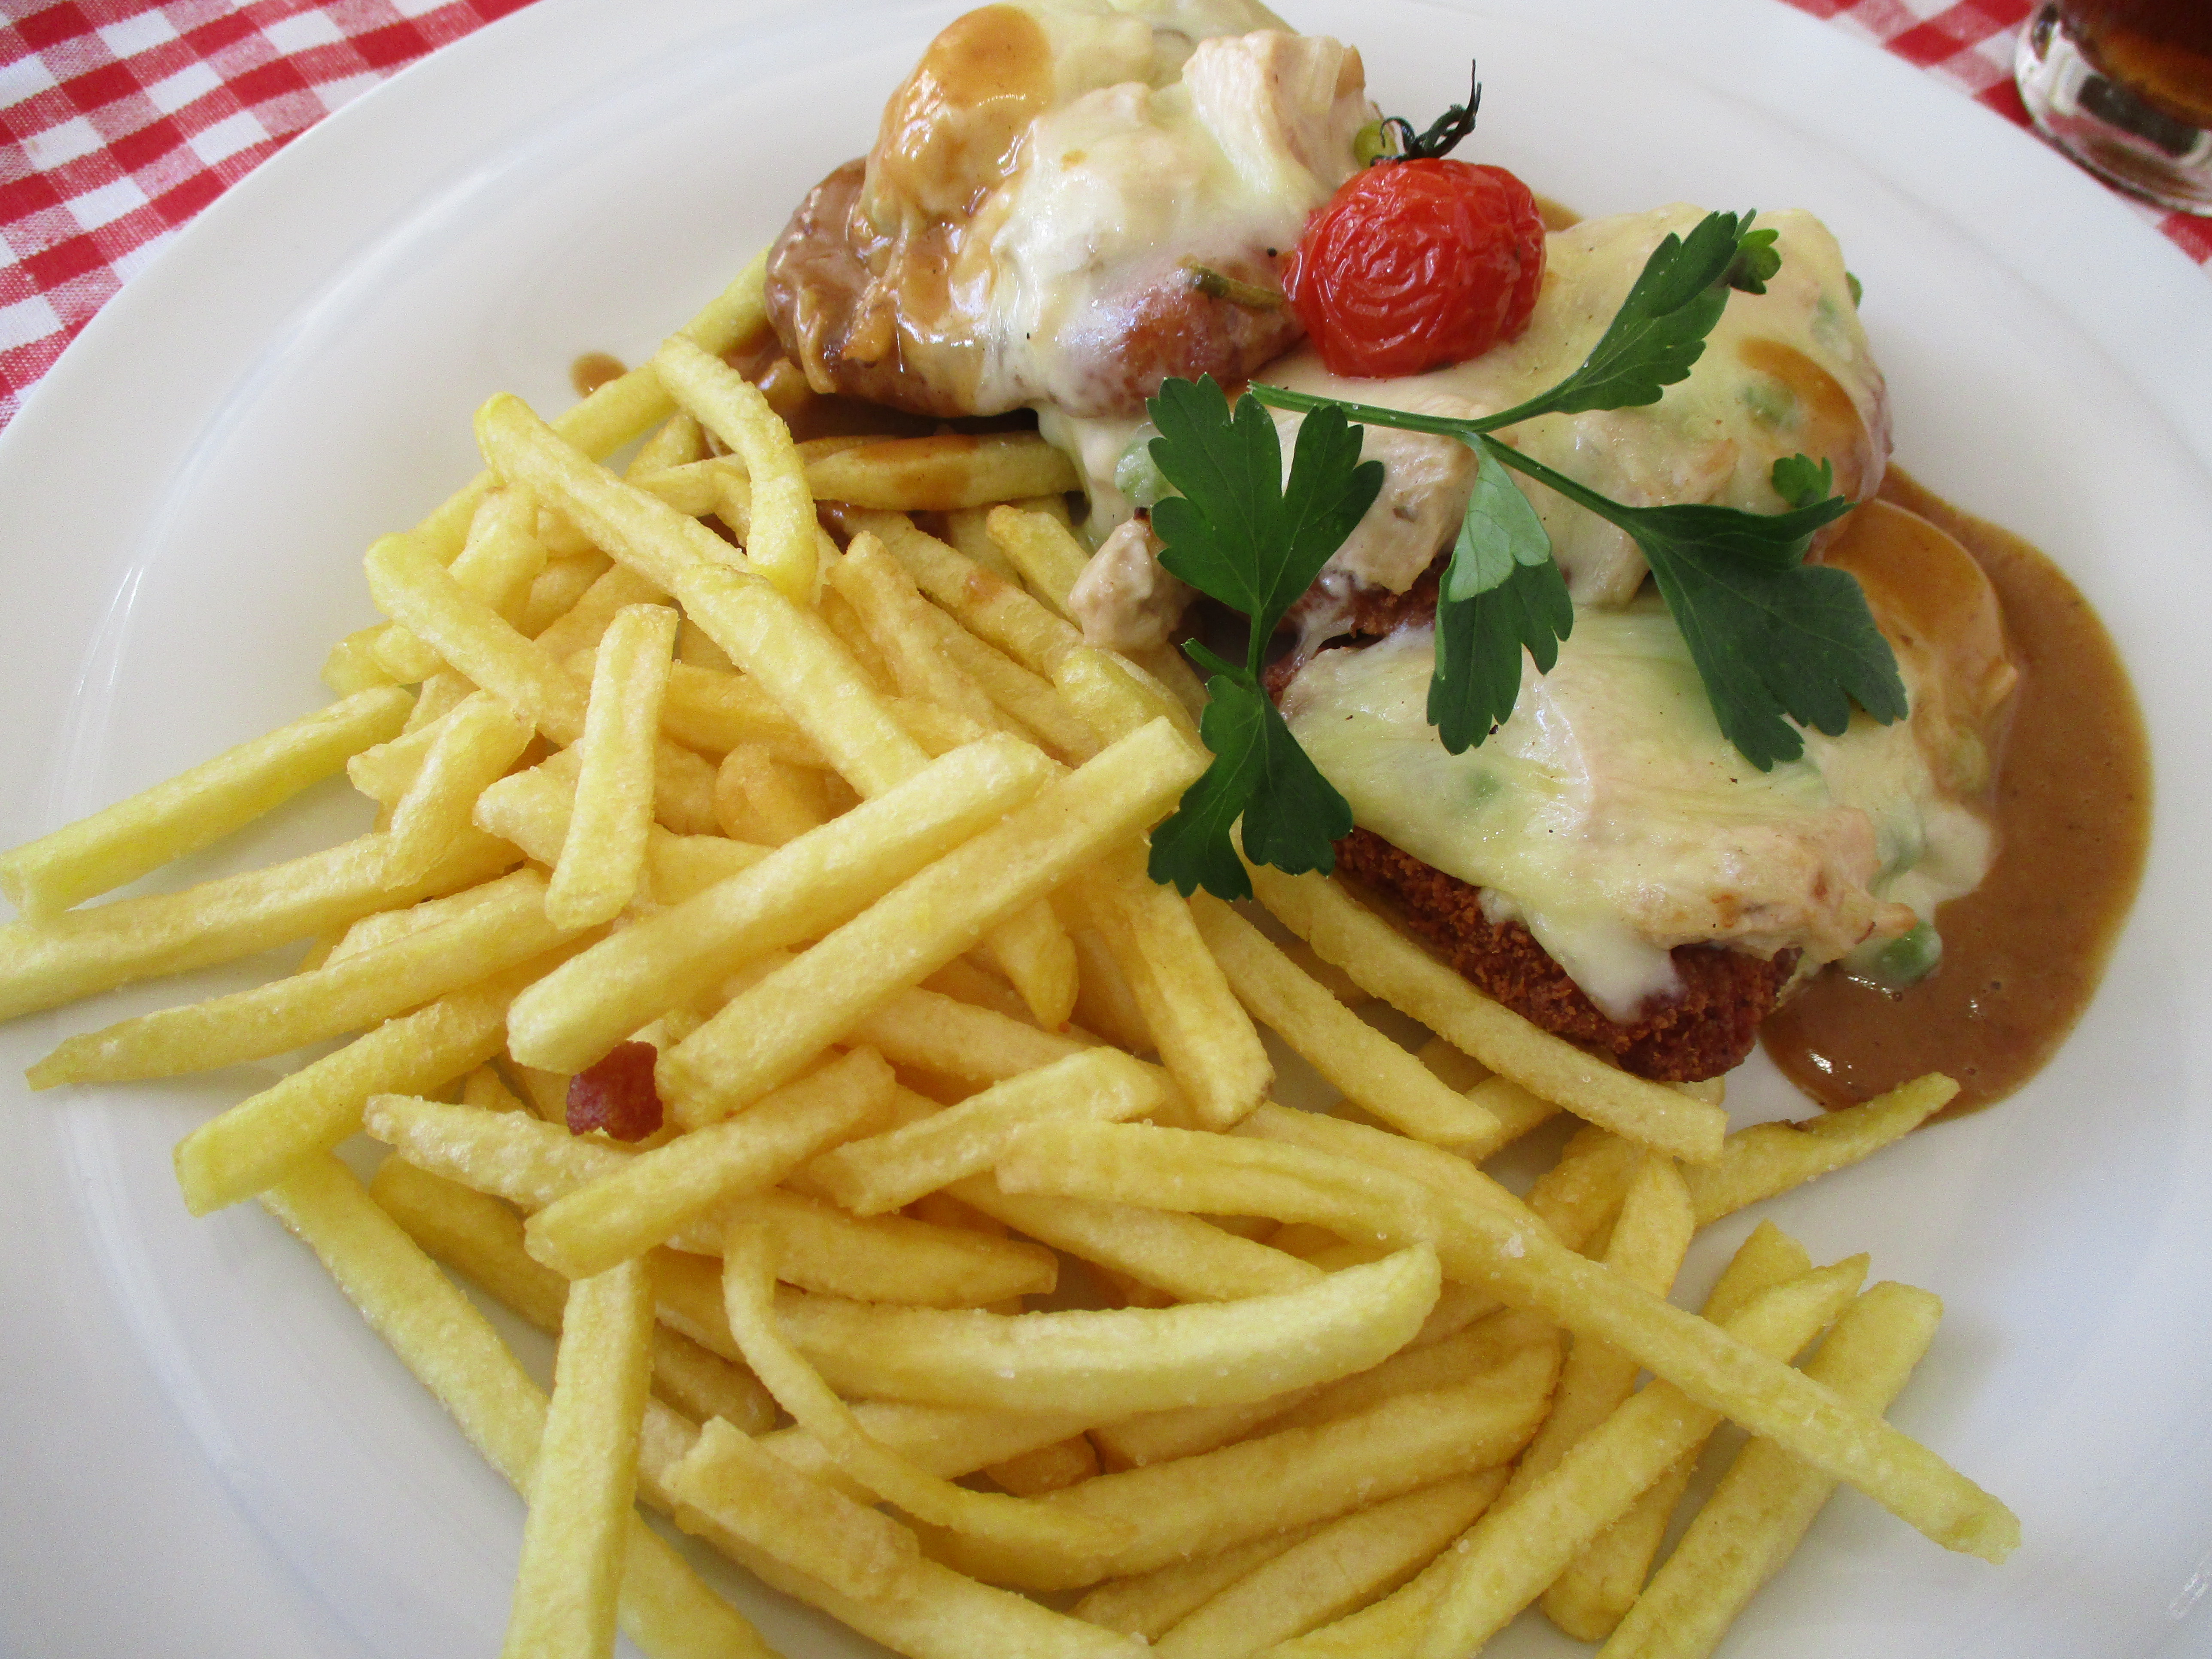 Tagesessen: überbackenes Schnitzel mit leckeren Pommes, für 8,90 Euro